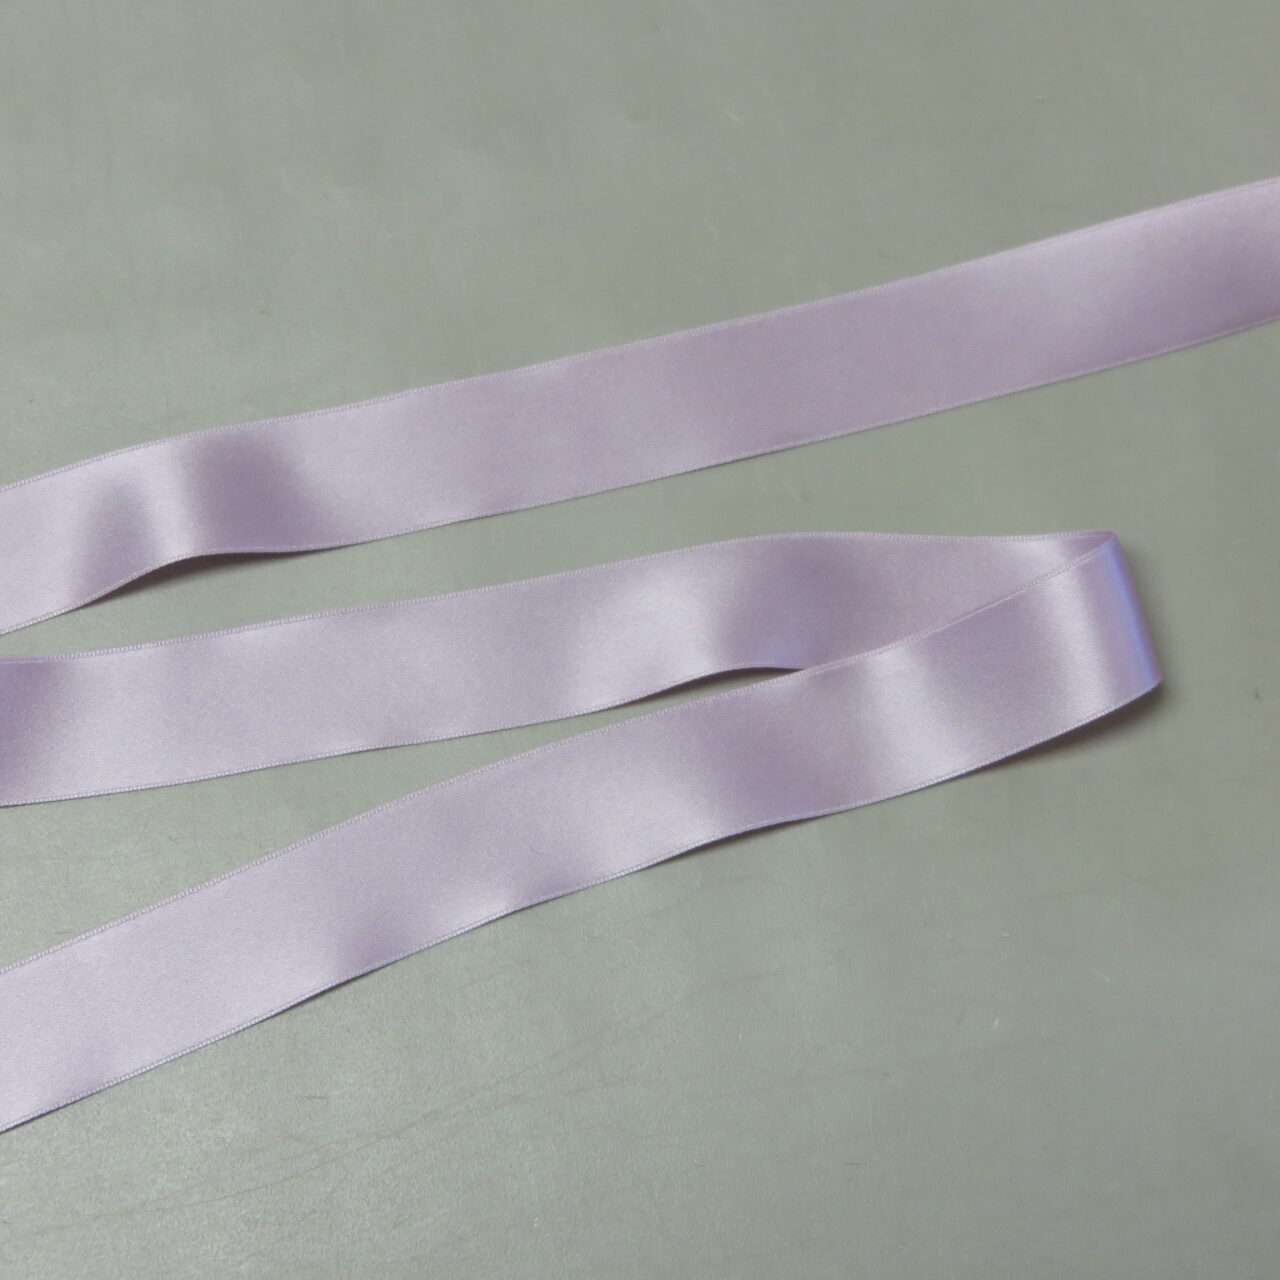 Double Faced Satin Ribbon, Silver, 1 1/2 inches wide • Promenade Fine  Fabrics